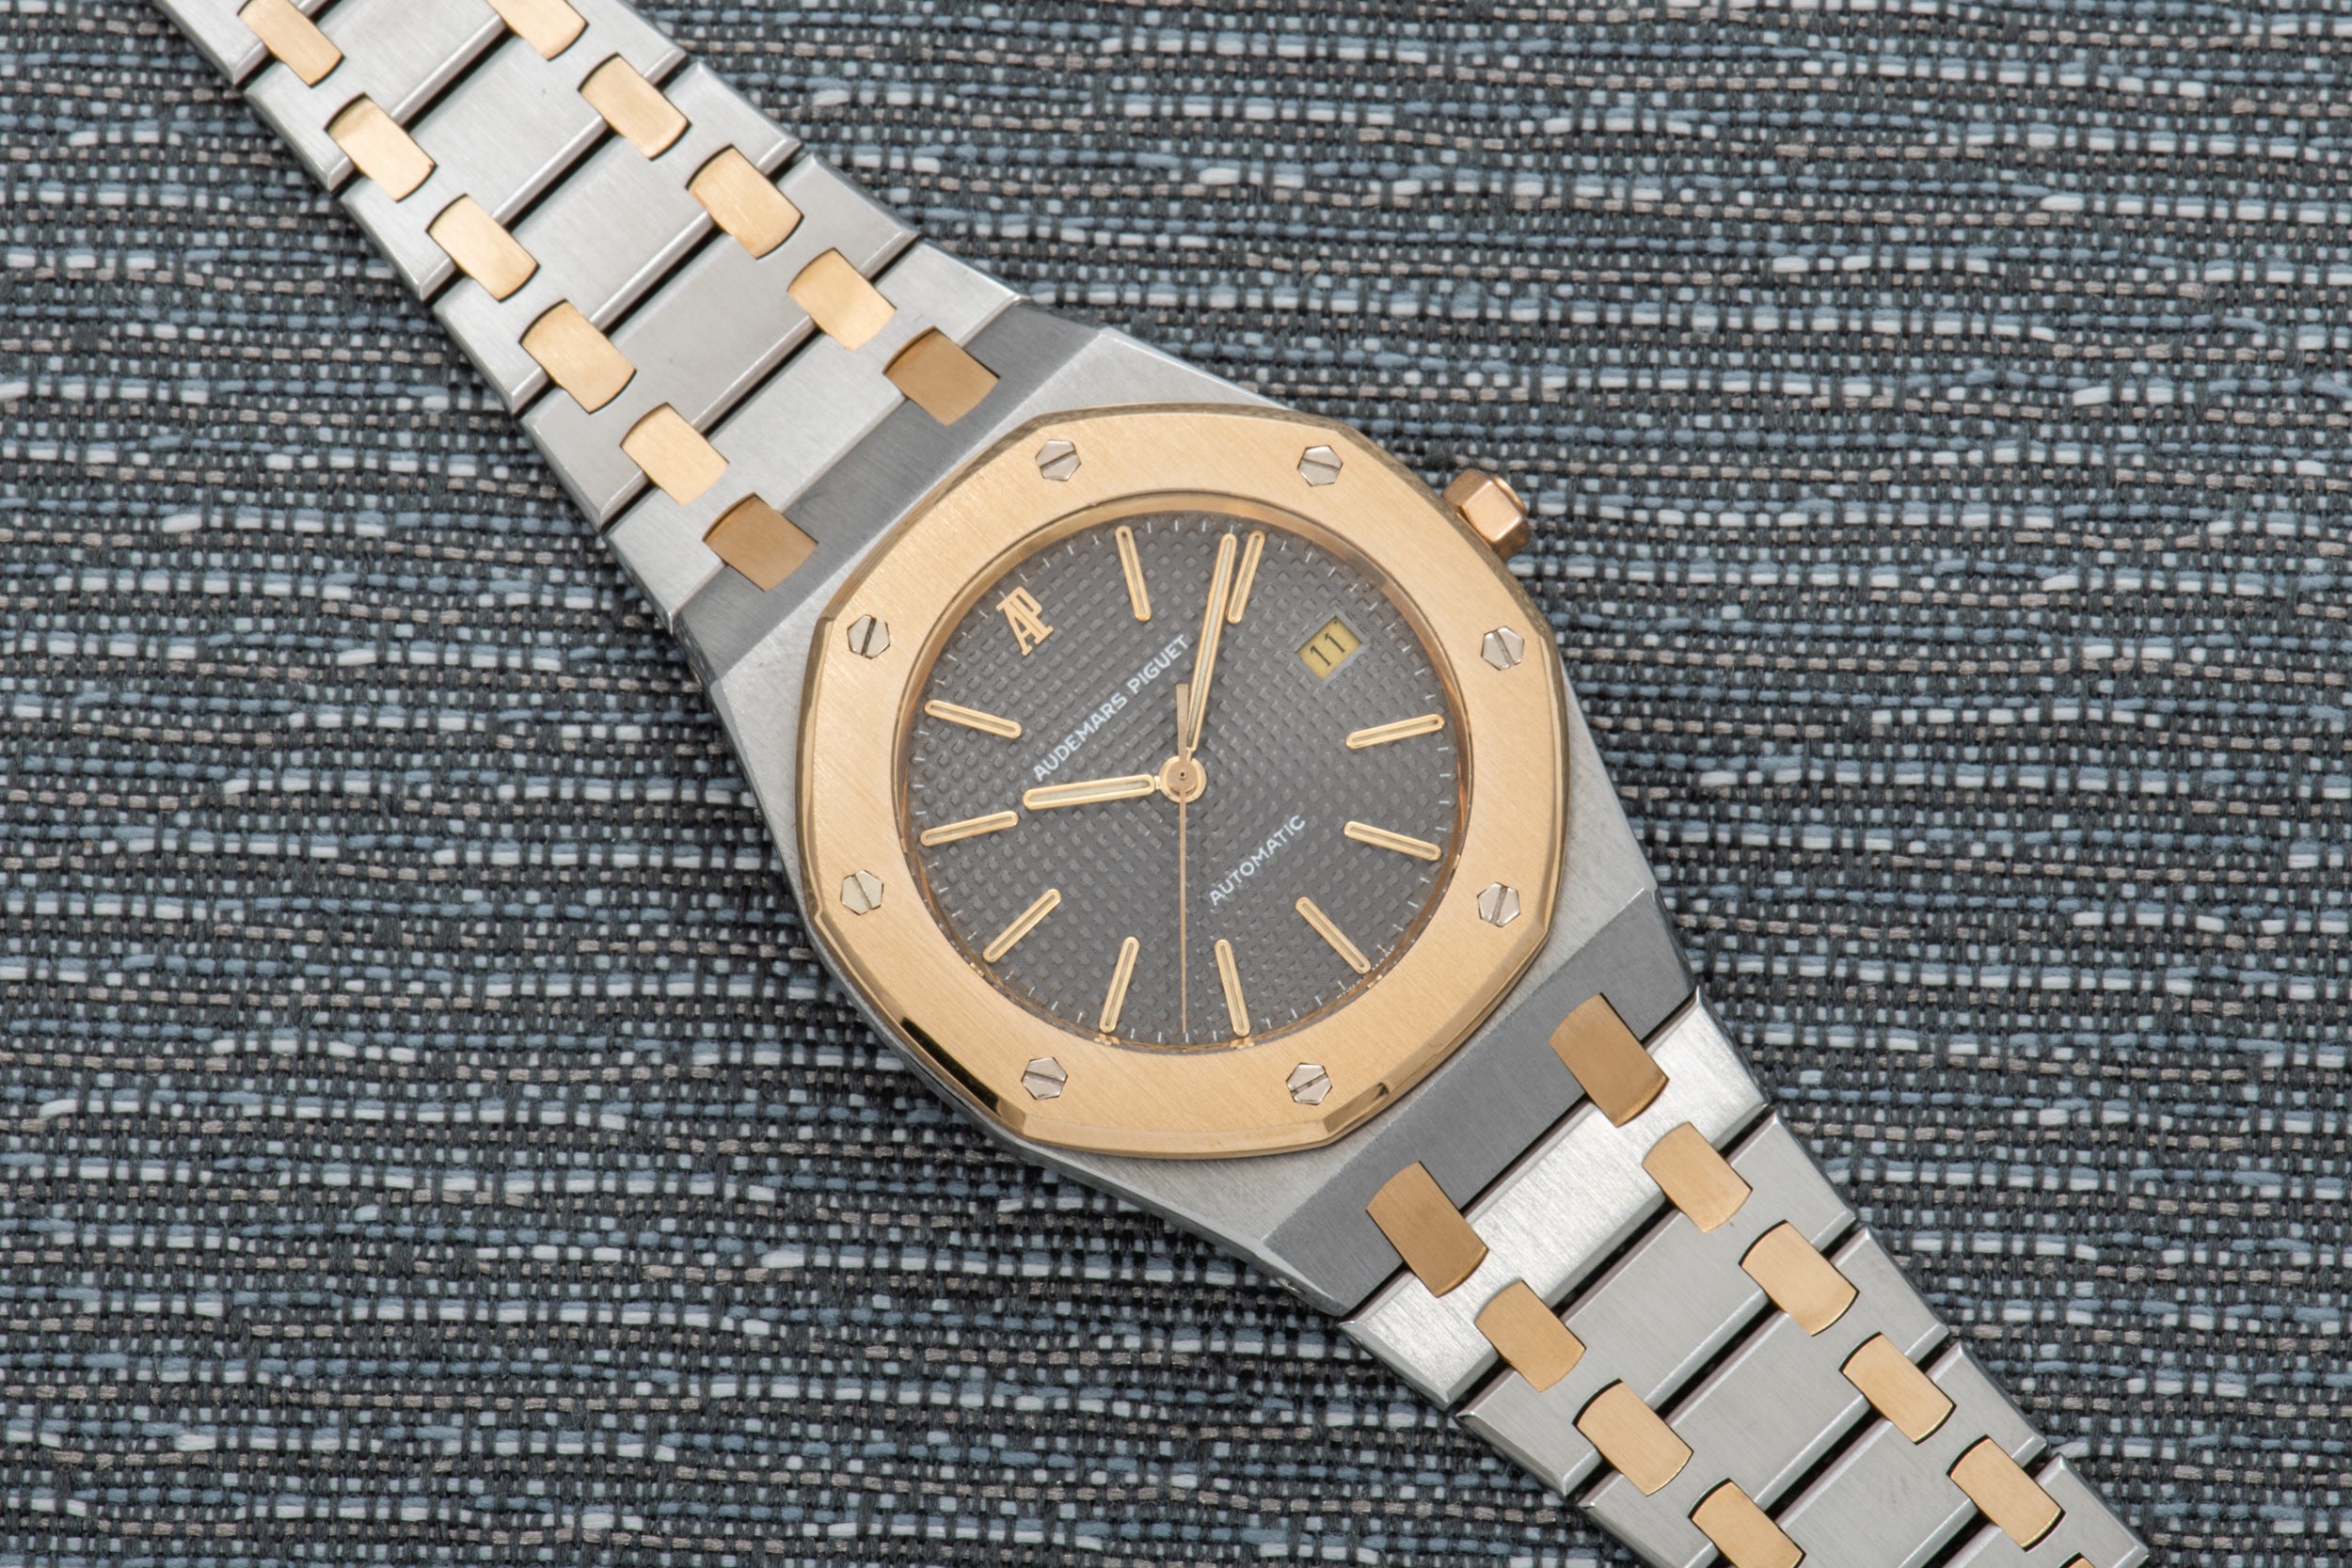 Audemars Piguet Royal Oak Collection - Premium Timepieces